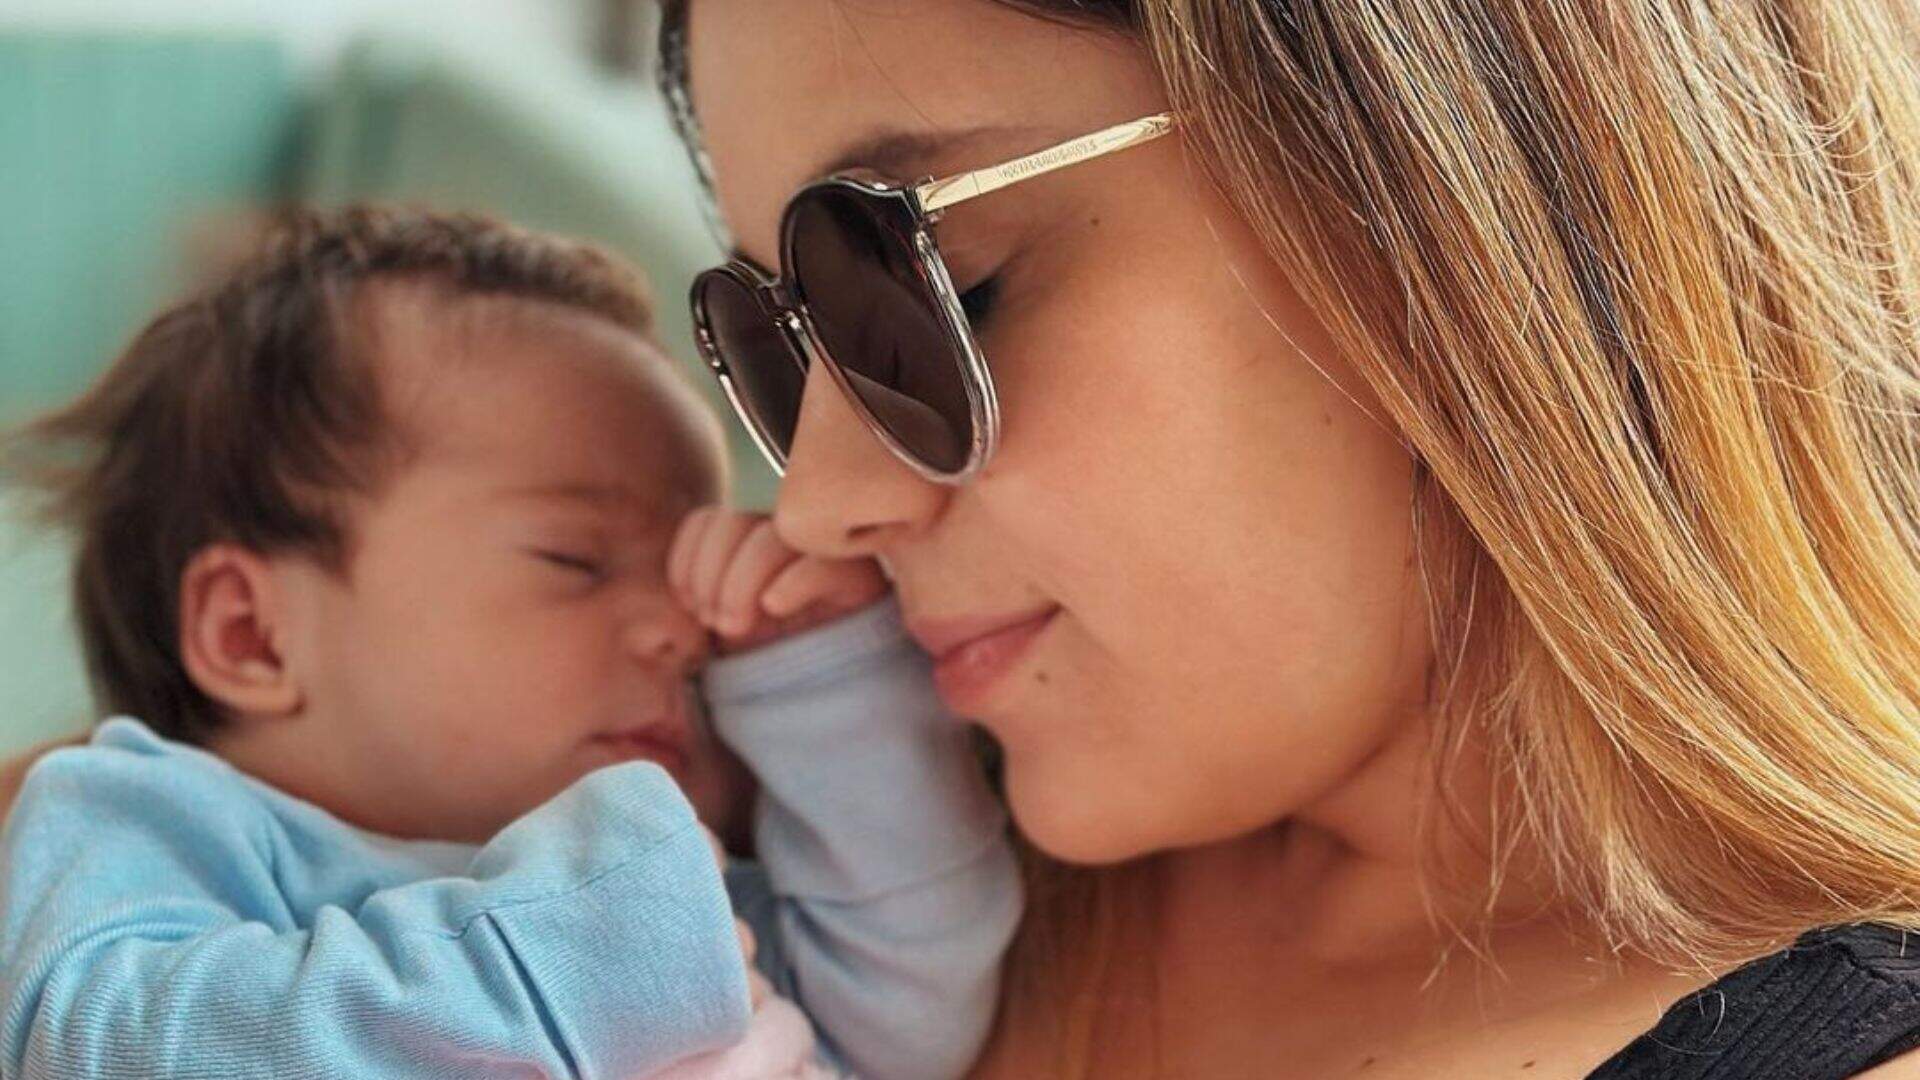 Viih Tube faz reflexão sobre maternidade real: “Mudou tudo pra mim” - Metropolitana FM